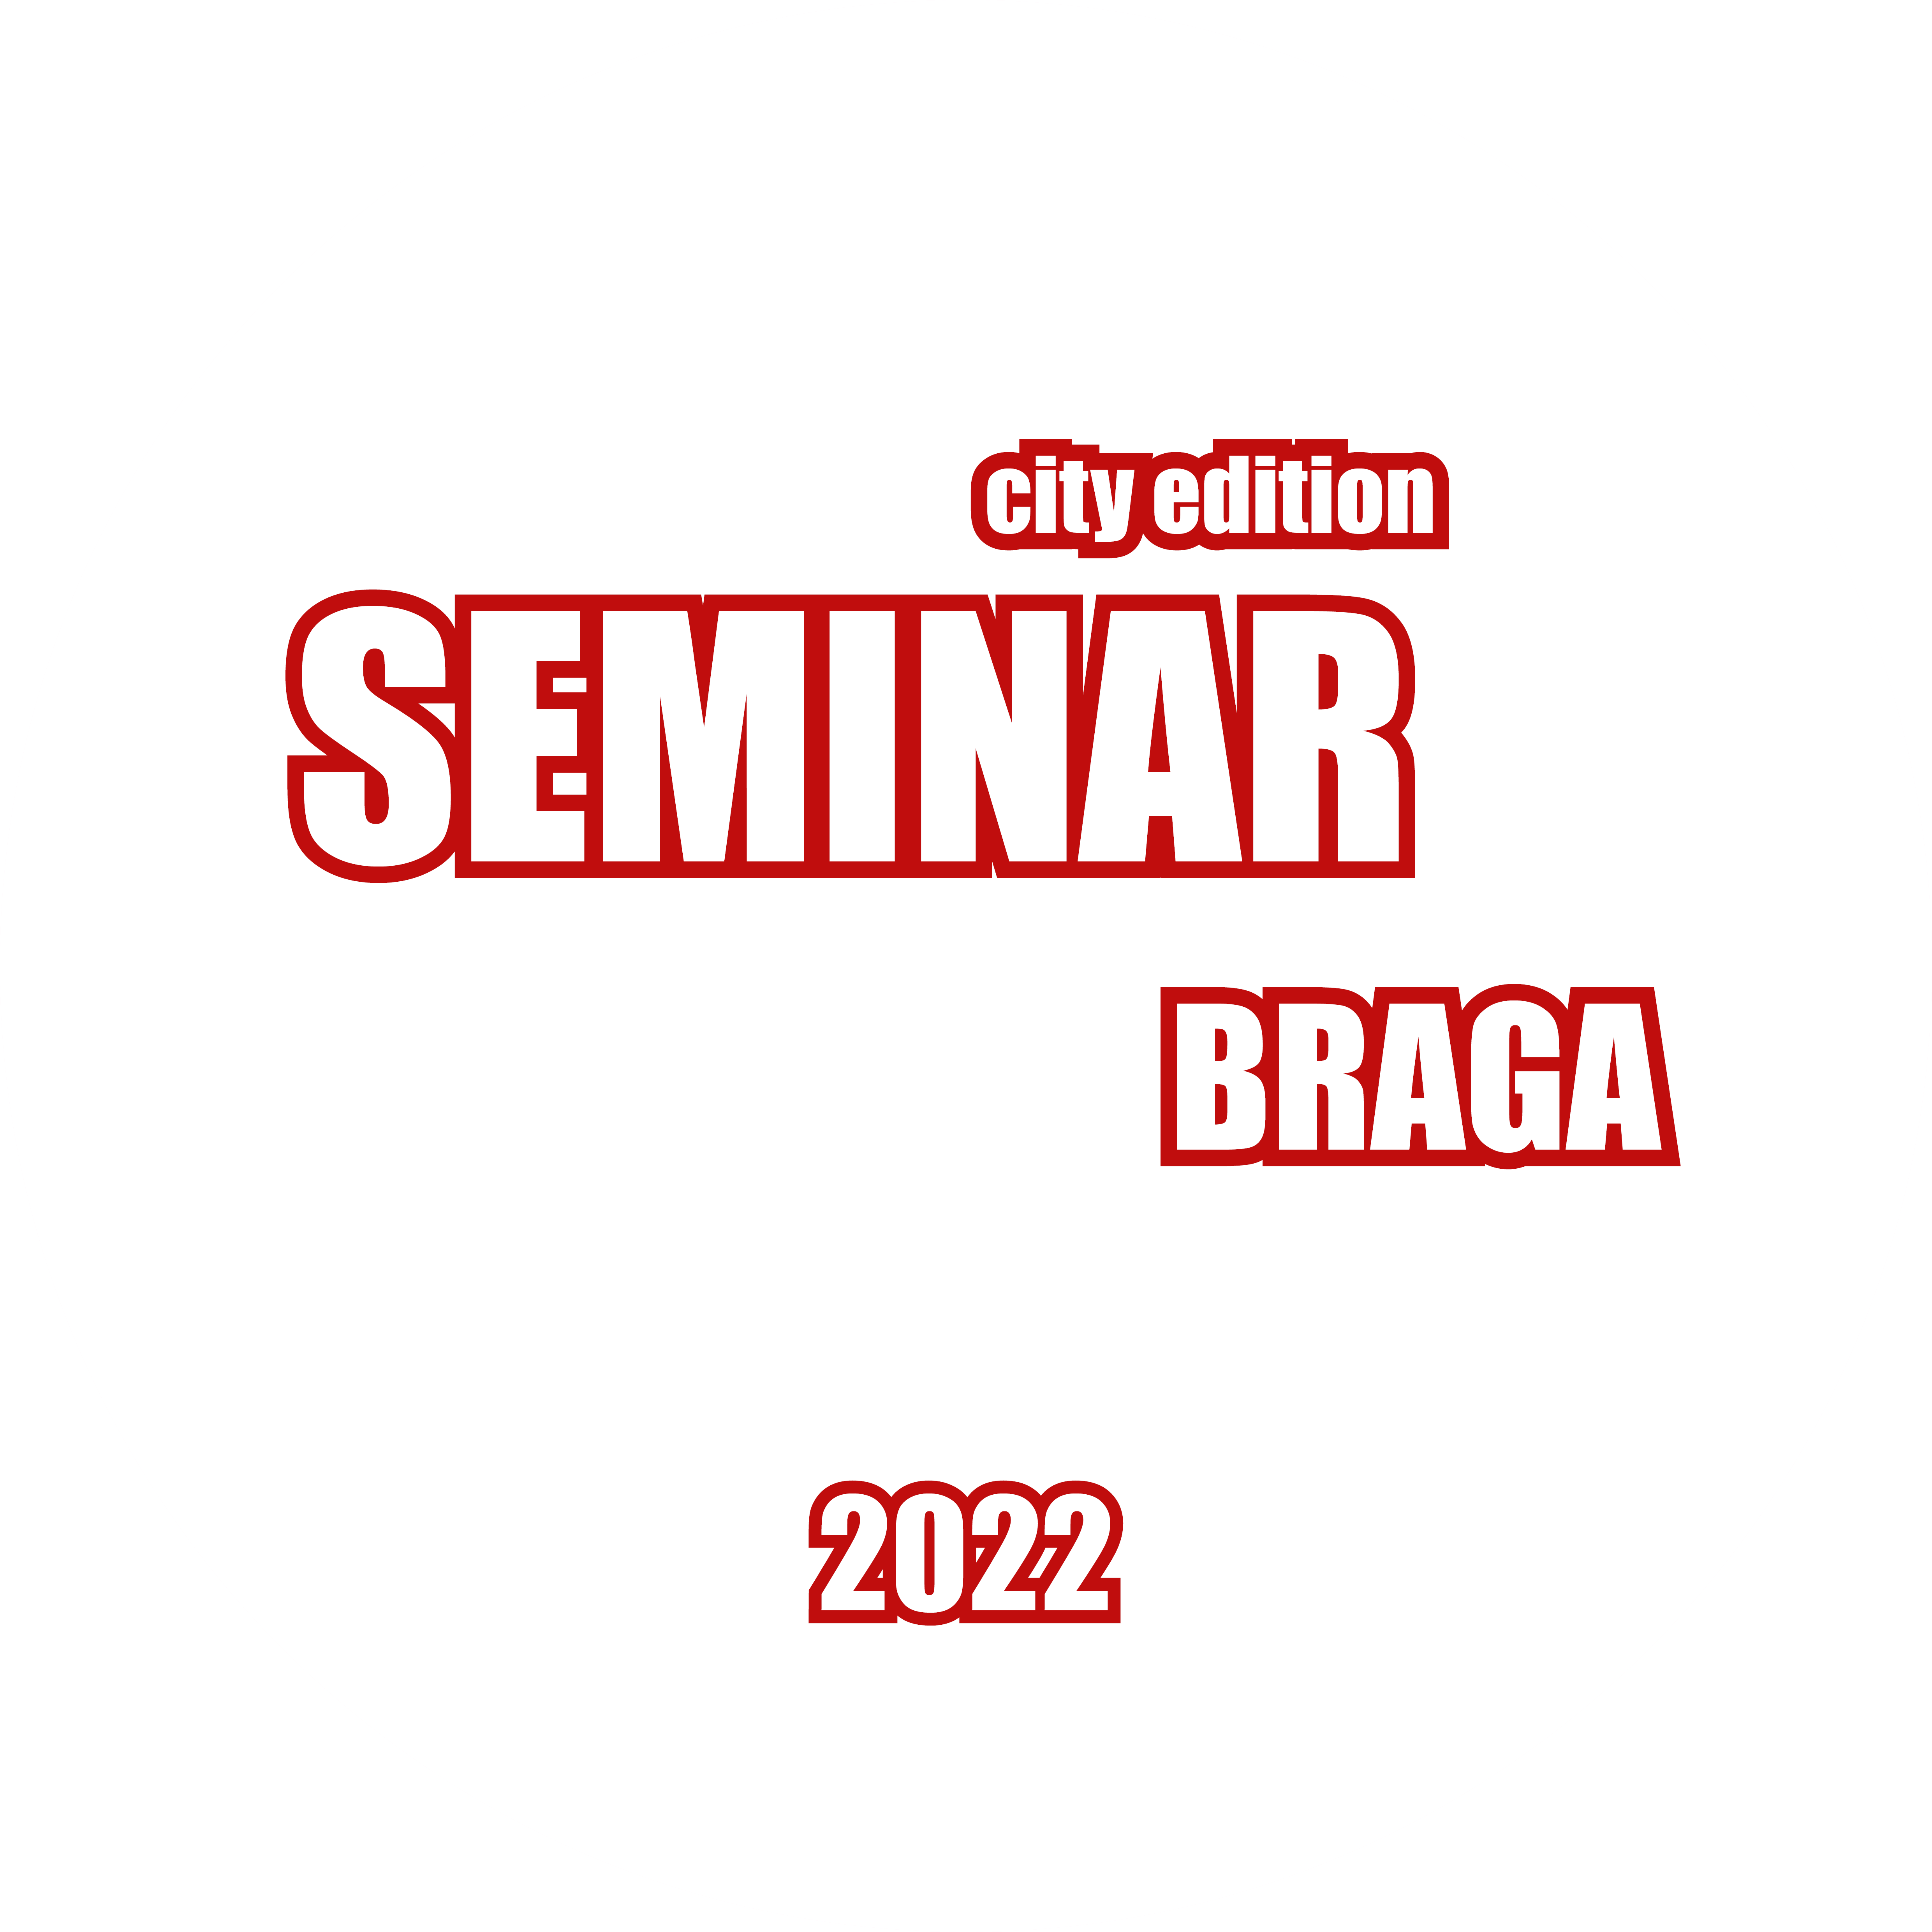 Future Design of Streets Braga Seminar 2022